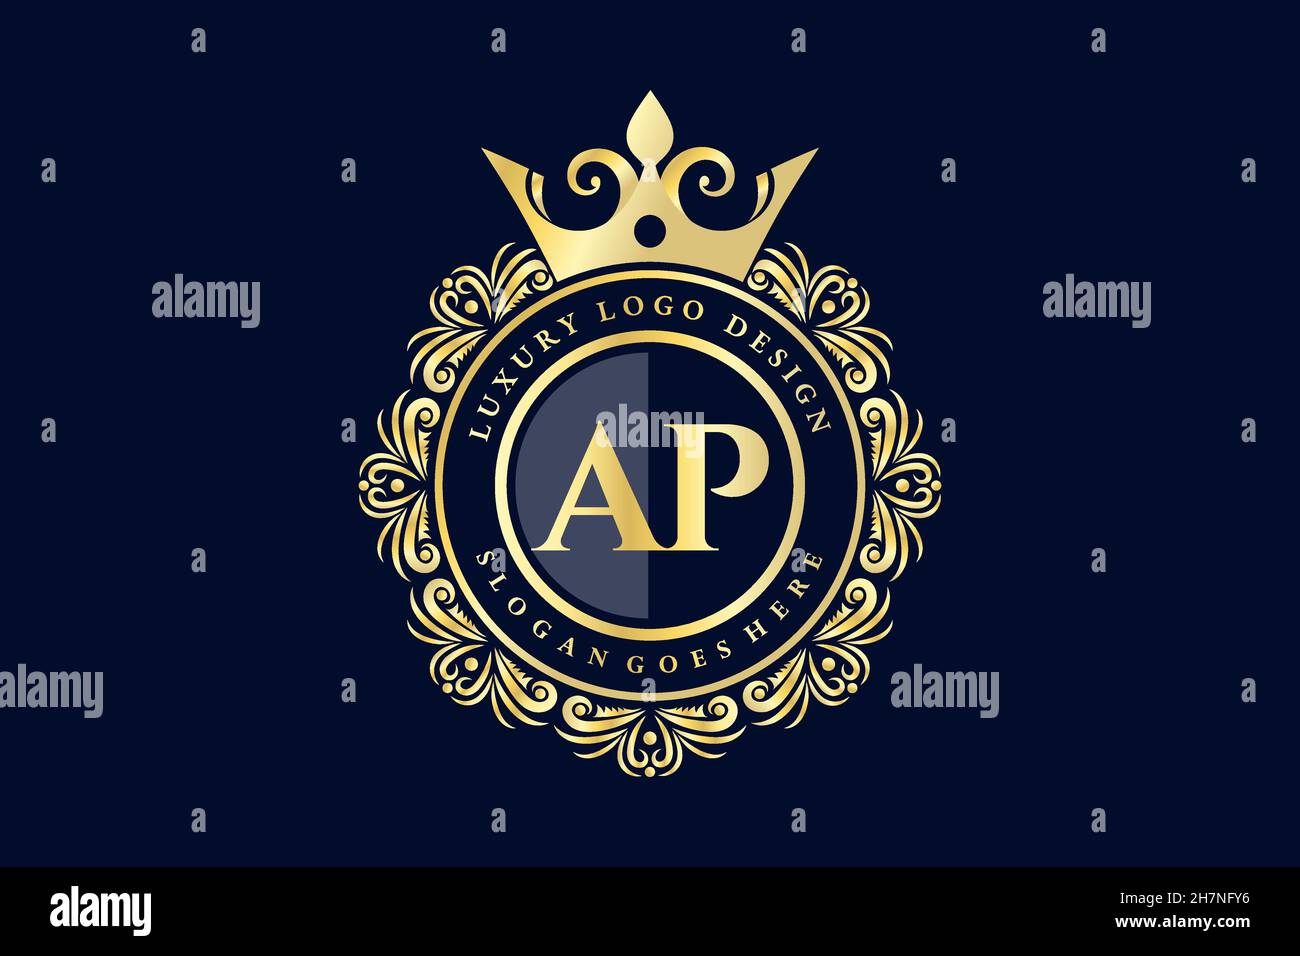 AP Initial Letter Gold calligraphic feminine floral hand drawn heraldic monogram antique vintage style luxury logo design Premium Stock Vector